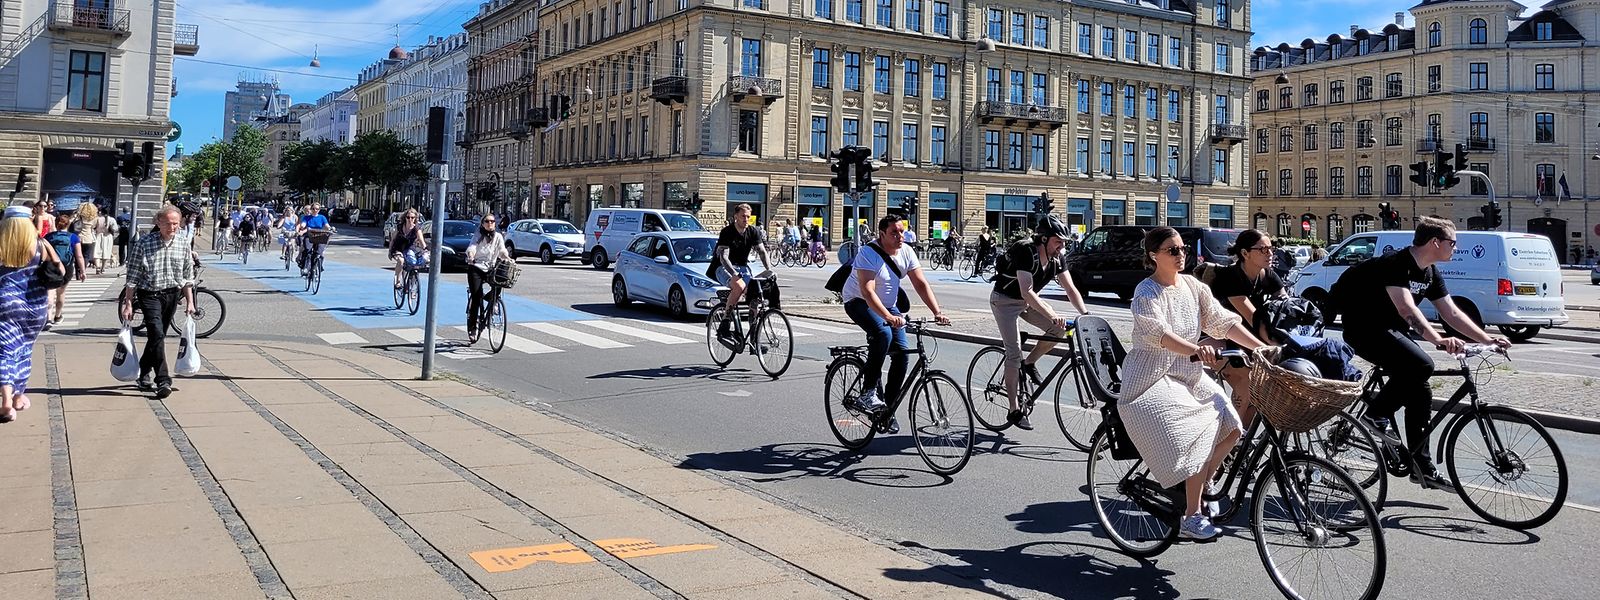 Die Königin-Louise-Brücke in Kopenhagen zählt mit täglich tausenden querenden Radfahrern zu den am meisten befahrenen Routen der Stadt. 